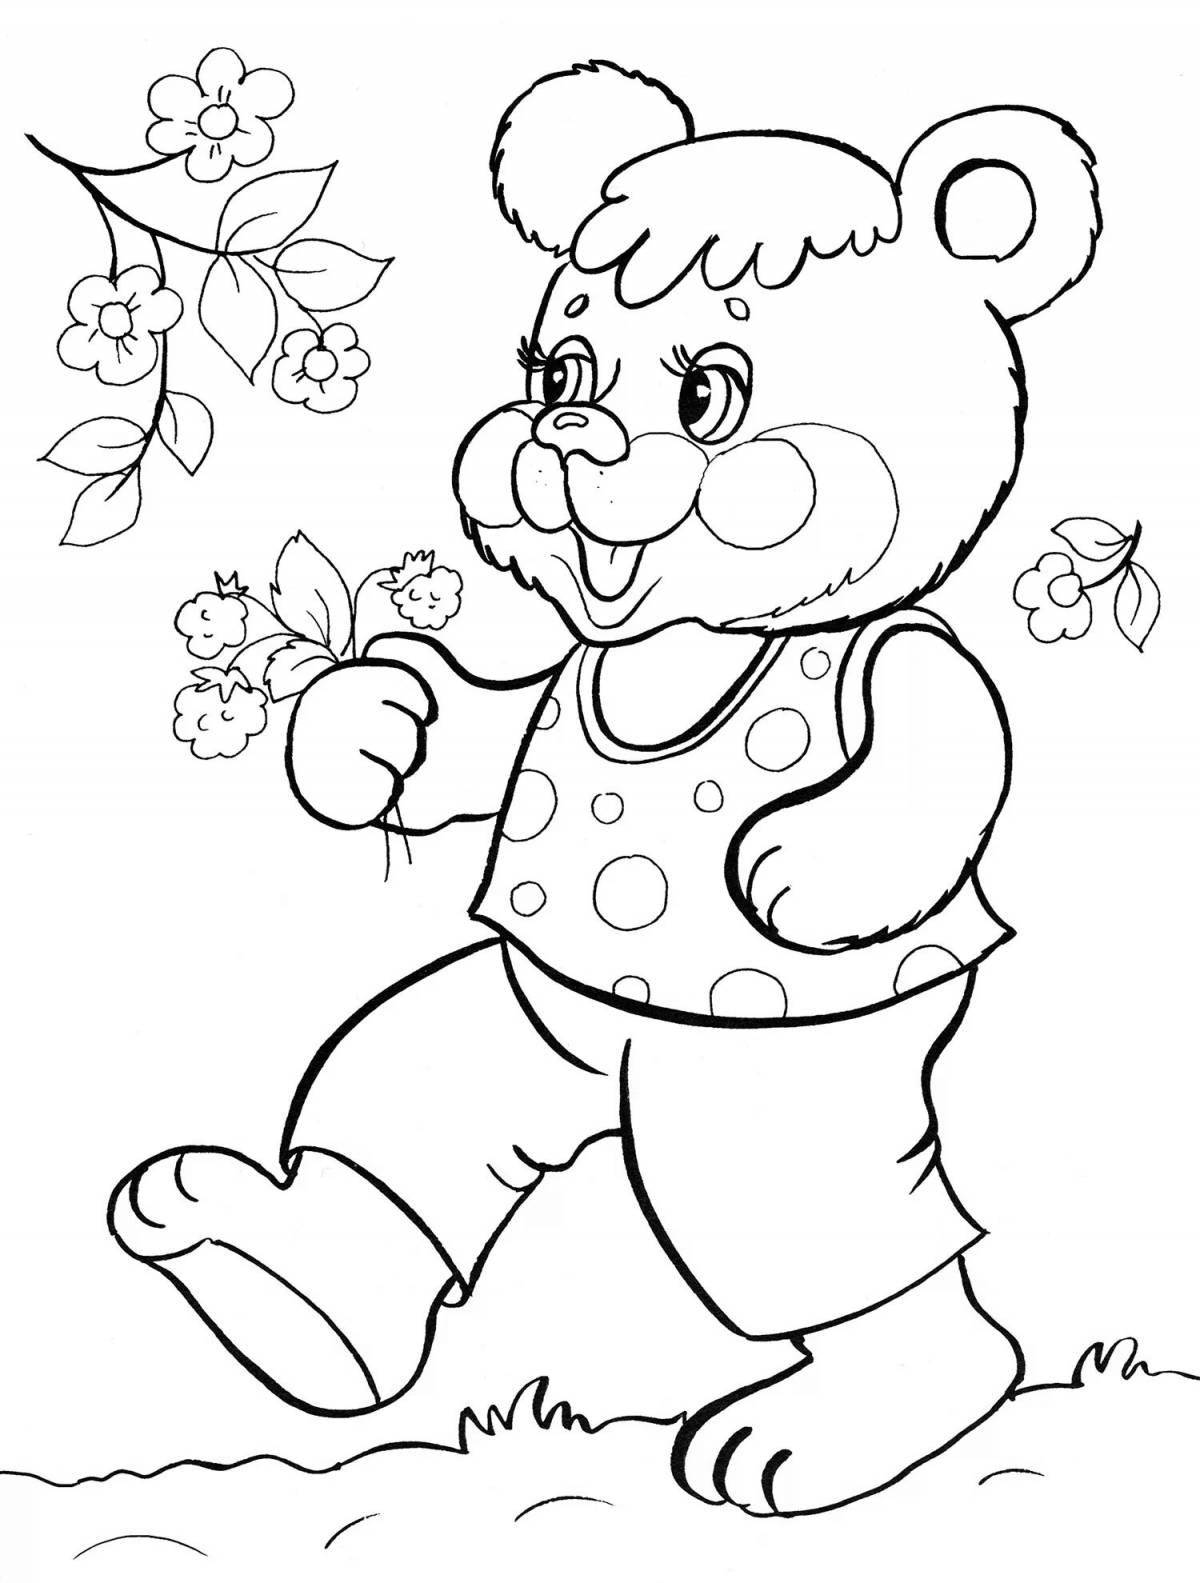 Coloring book sparkling bun and bear